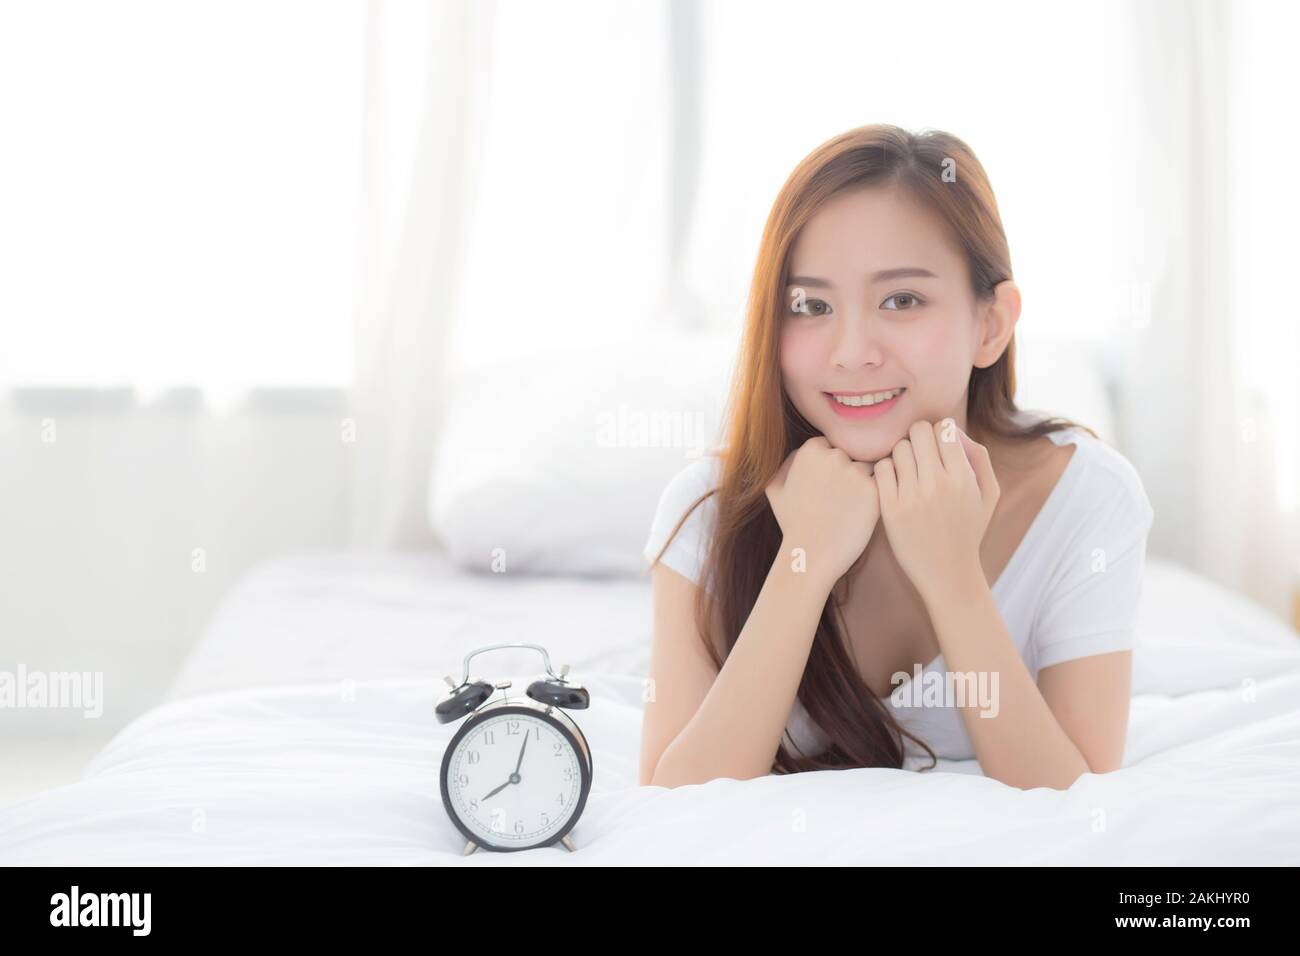 Splendido Ritratto di giovane donna asiatica svegliarsi la mattina e sveglia, ragazza in piedi fretta wake tardi con appuntamento con tenda sullo sfondo Foto Stock